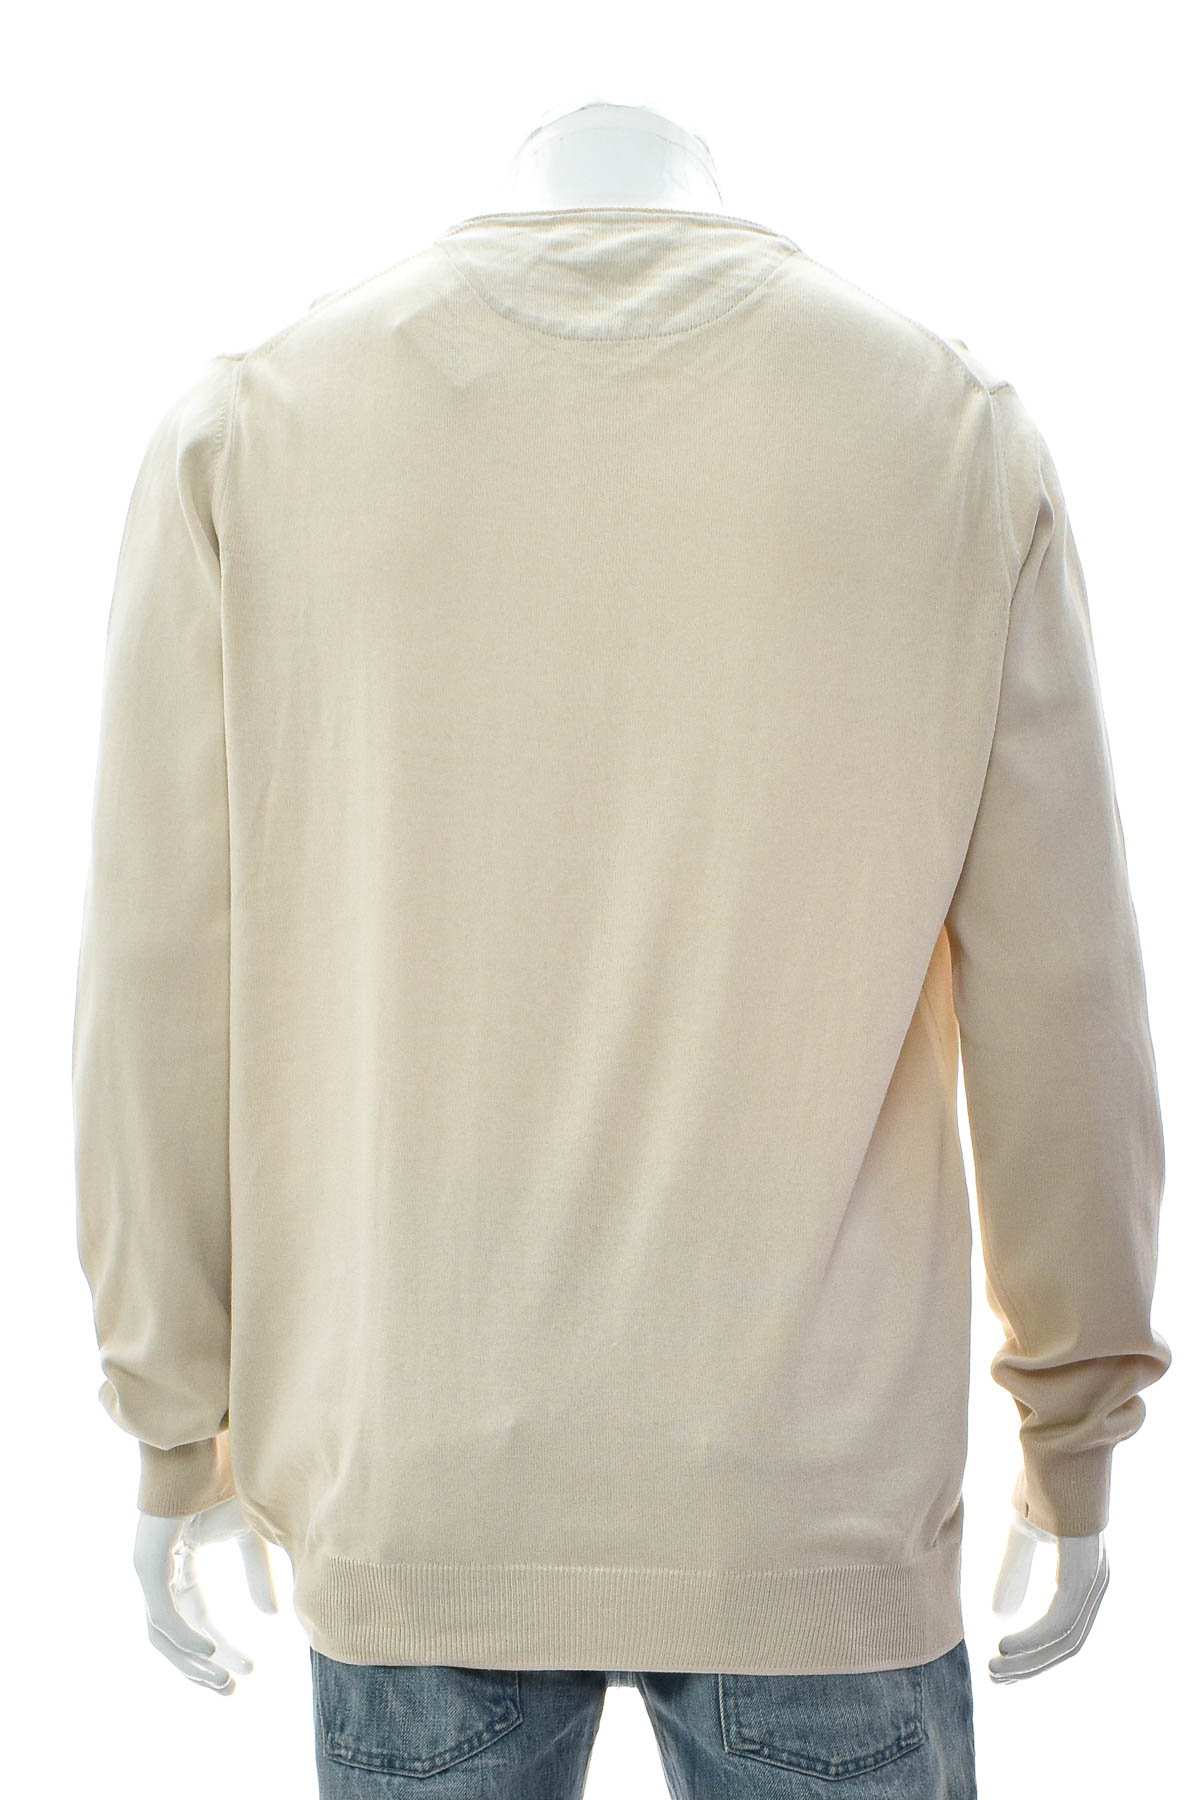 Men's sweater - ZARA Man - 1